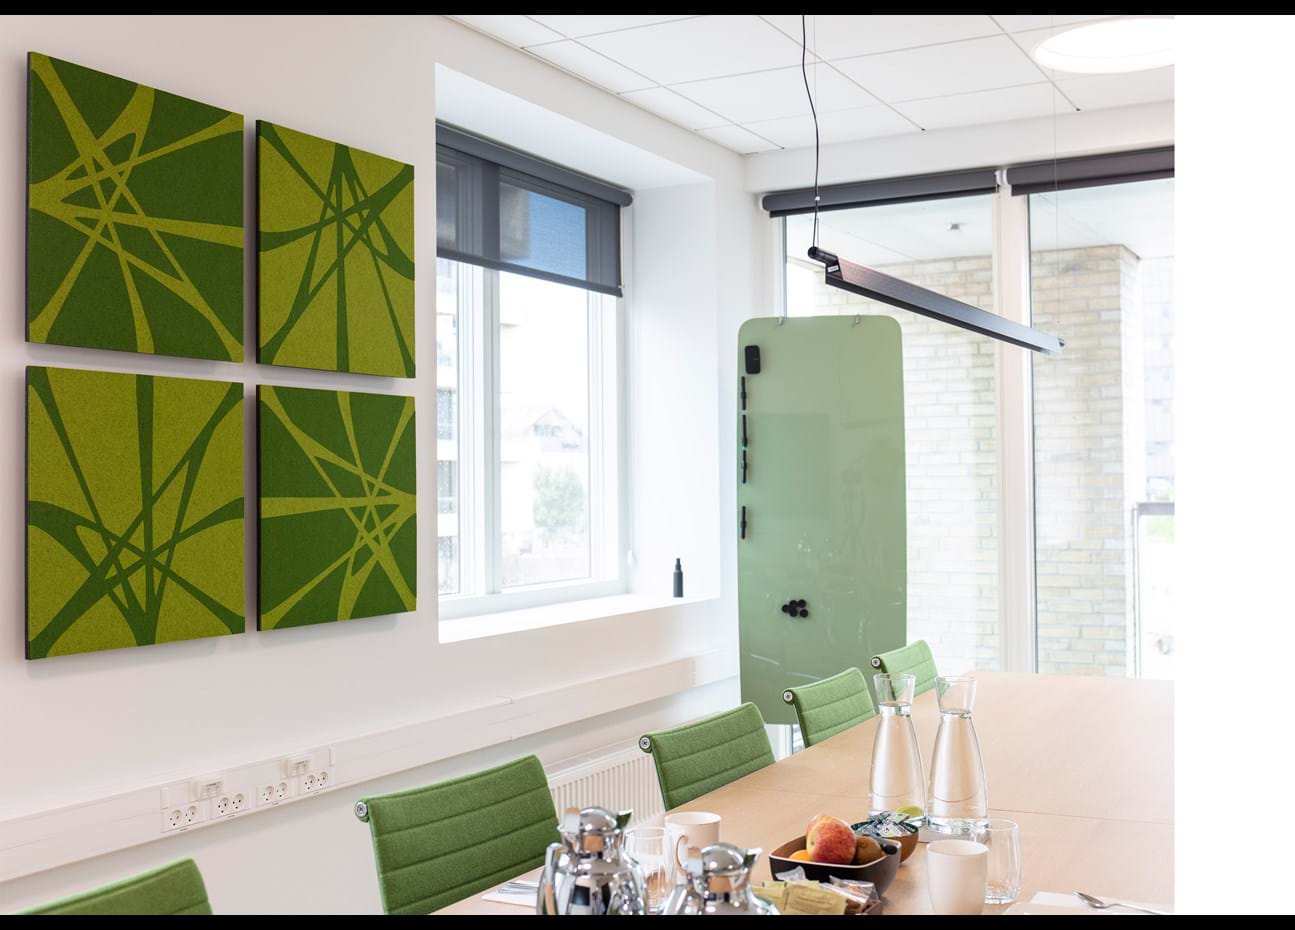 TwisterPlus akustikpanel i grøn filt på væg